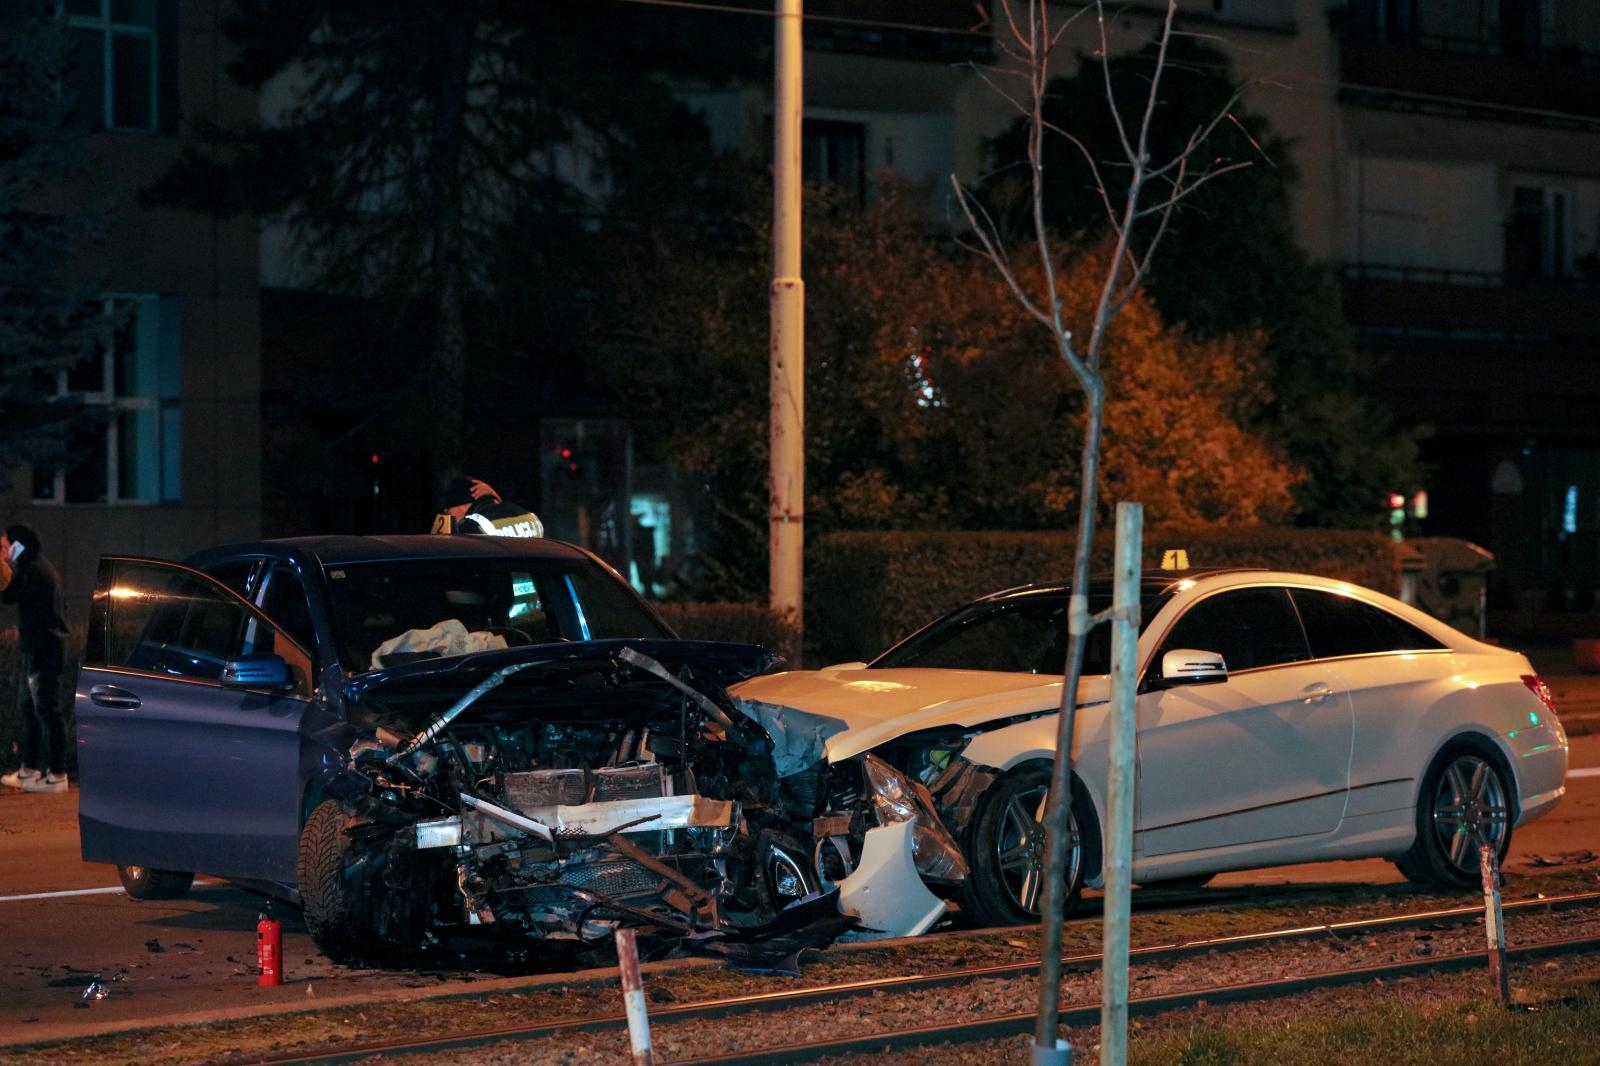 Nova nesreća u Osijeku, sudarila se četiri auta, jedan skršen. Kriv mladi vozač?